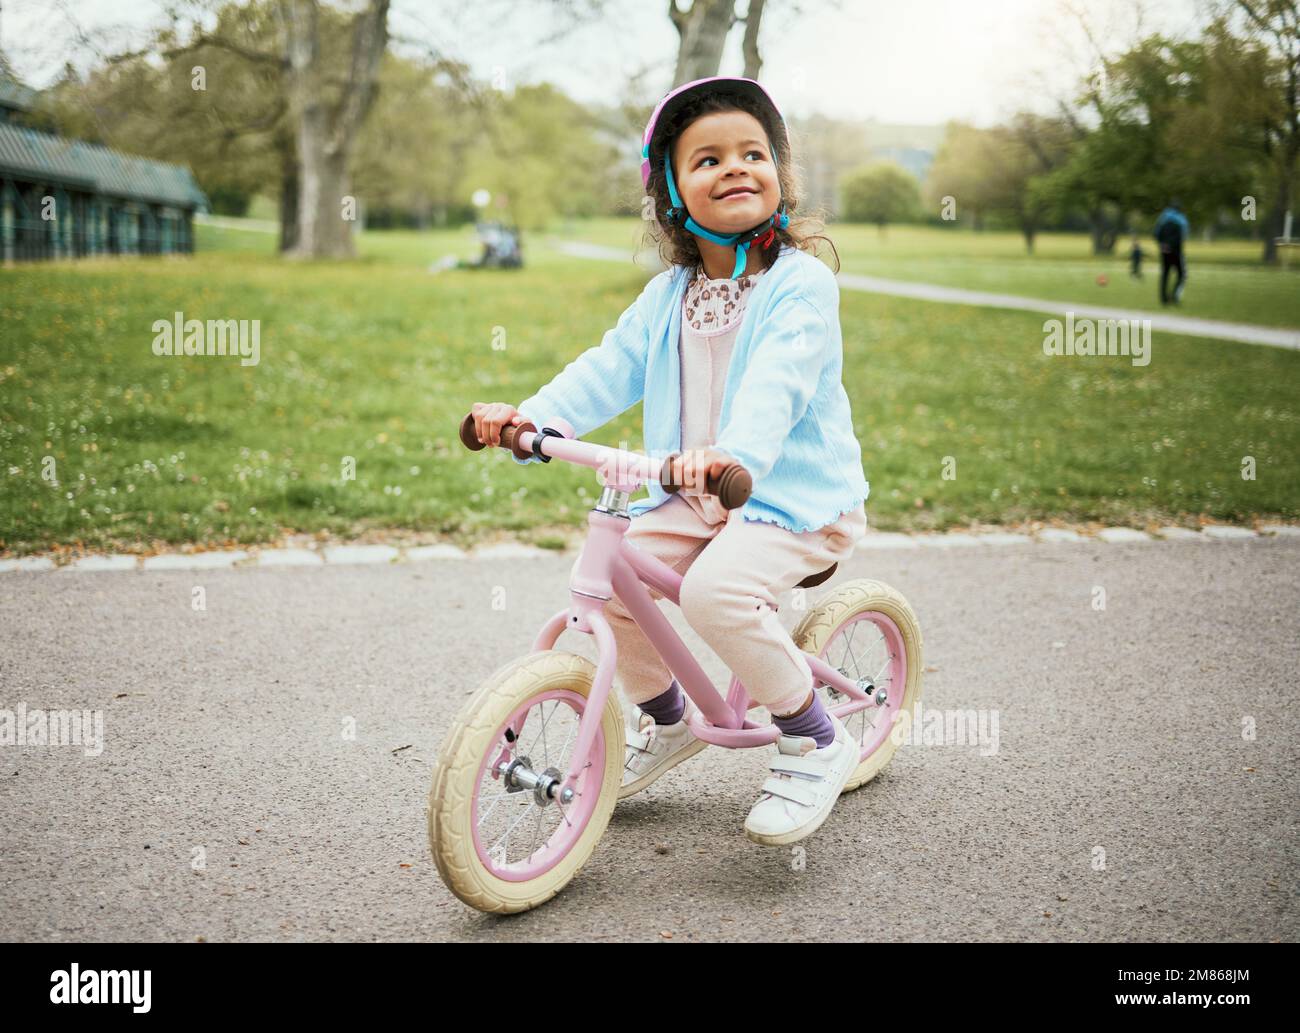 Ciclismo, pensamiento y niño en bicicleta en el parque, actividad al aire libre y aprendizaje en Nueva Zelanda. Deporte, felicidad y niña niño jugando en paseo en bicicleta Foto de stock